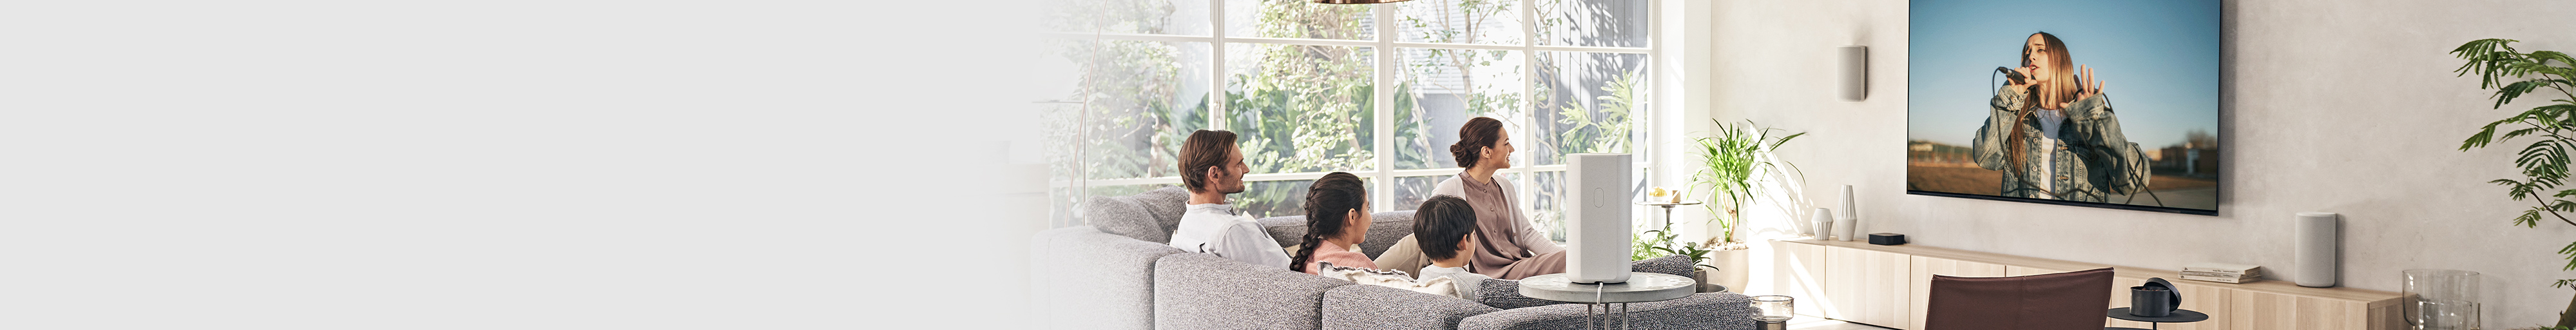 תמונה של משפחה של ארבעה אנשים נחה על הספה וצופה בטלוויזיה.